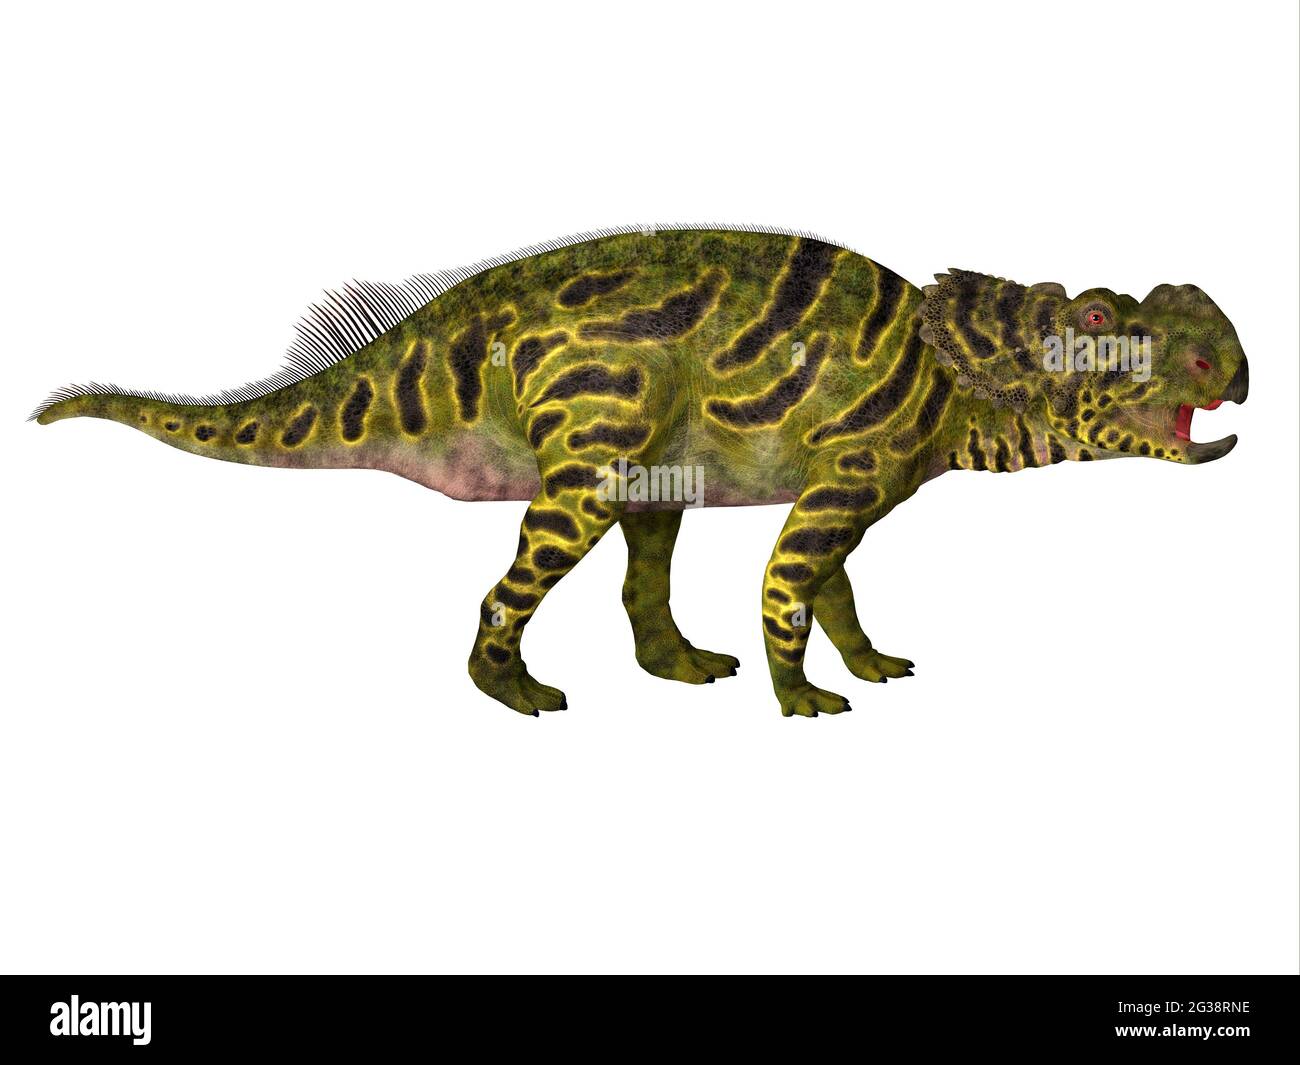 Pachyrhinosaurus era un dinosaurio herbívoro ceratopsiano que vivió en Alberta, Canadá durante el período Cretácico. Foto de stock